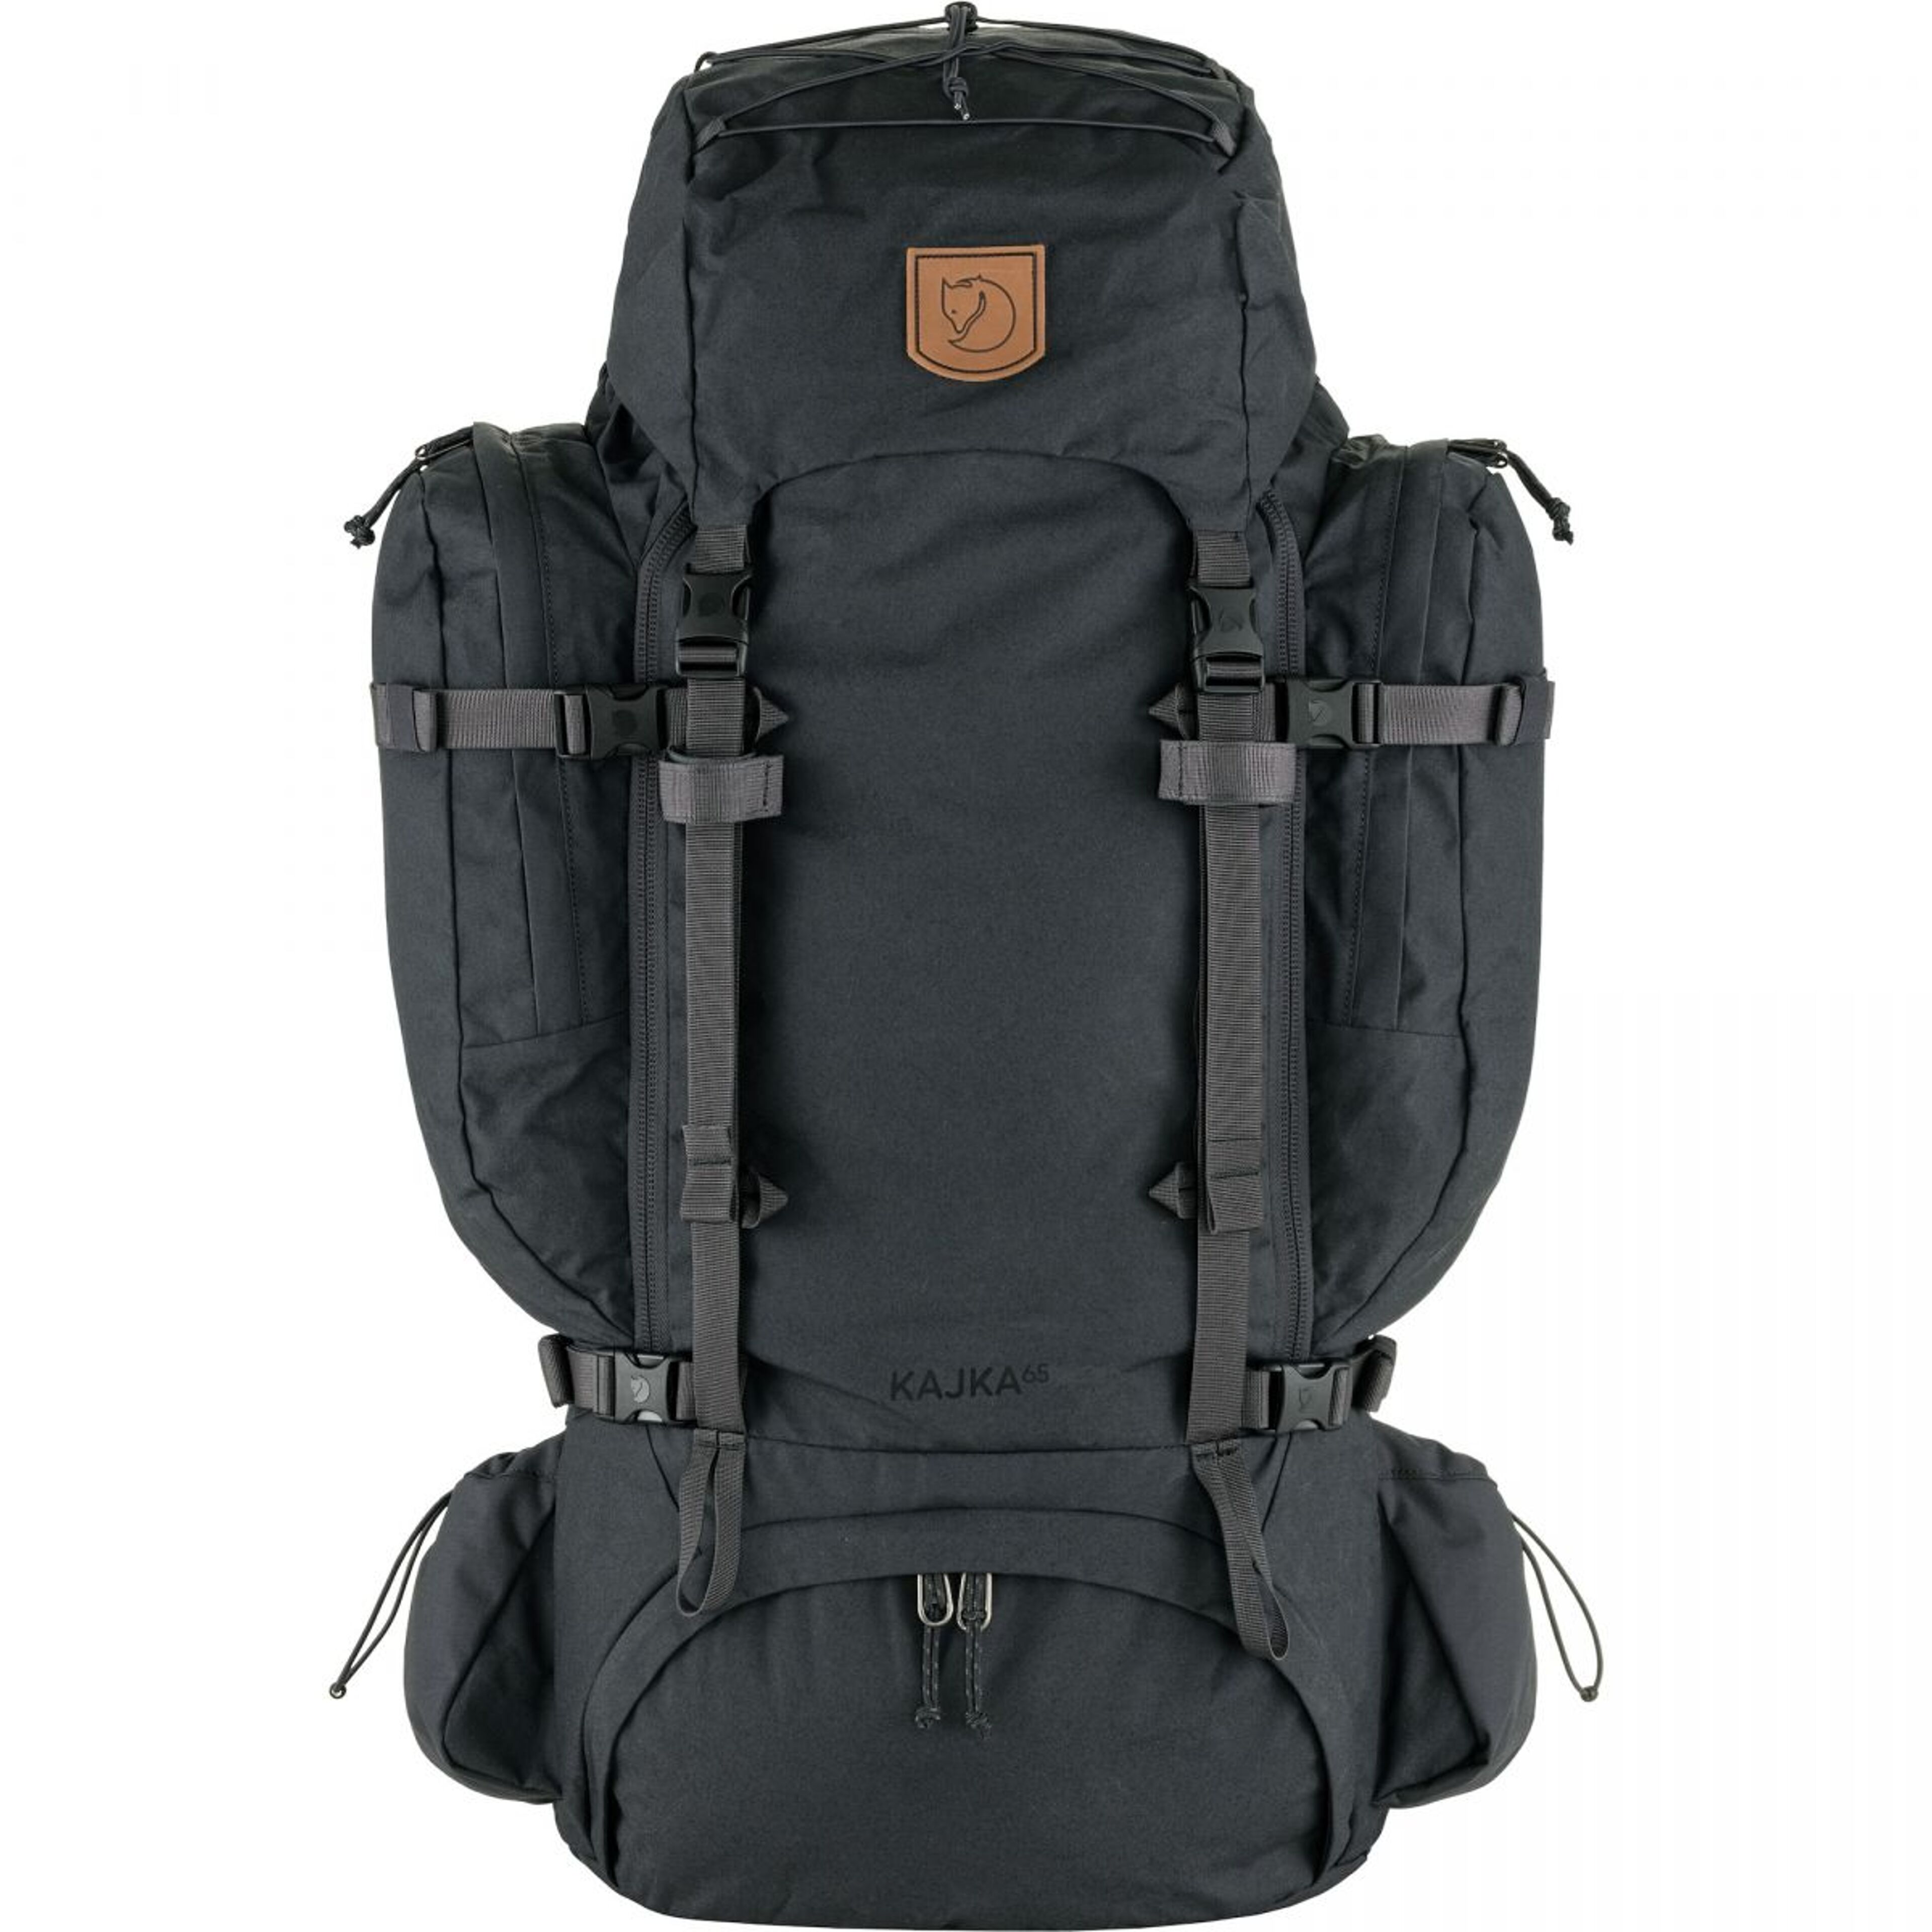 Fjallraven Kajka 65 M/L Backpack